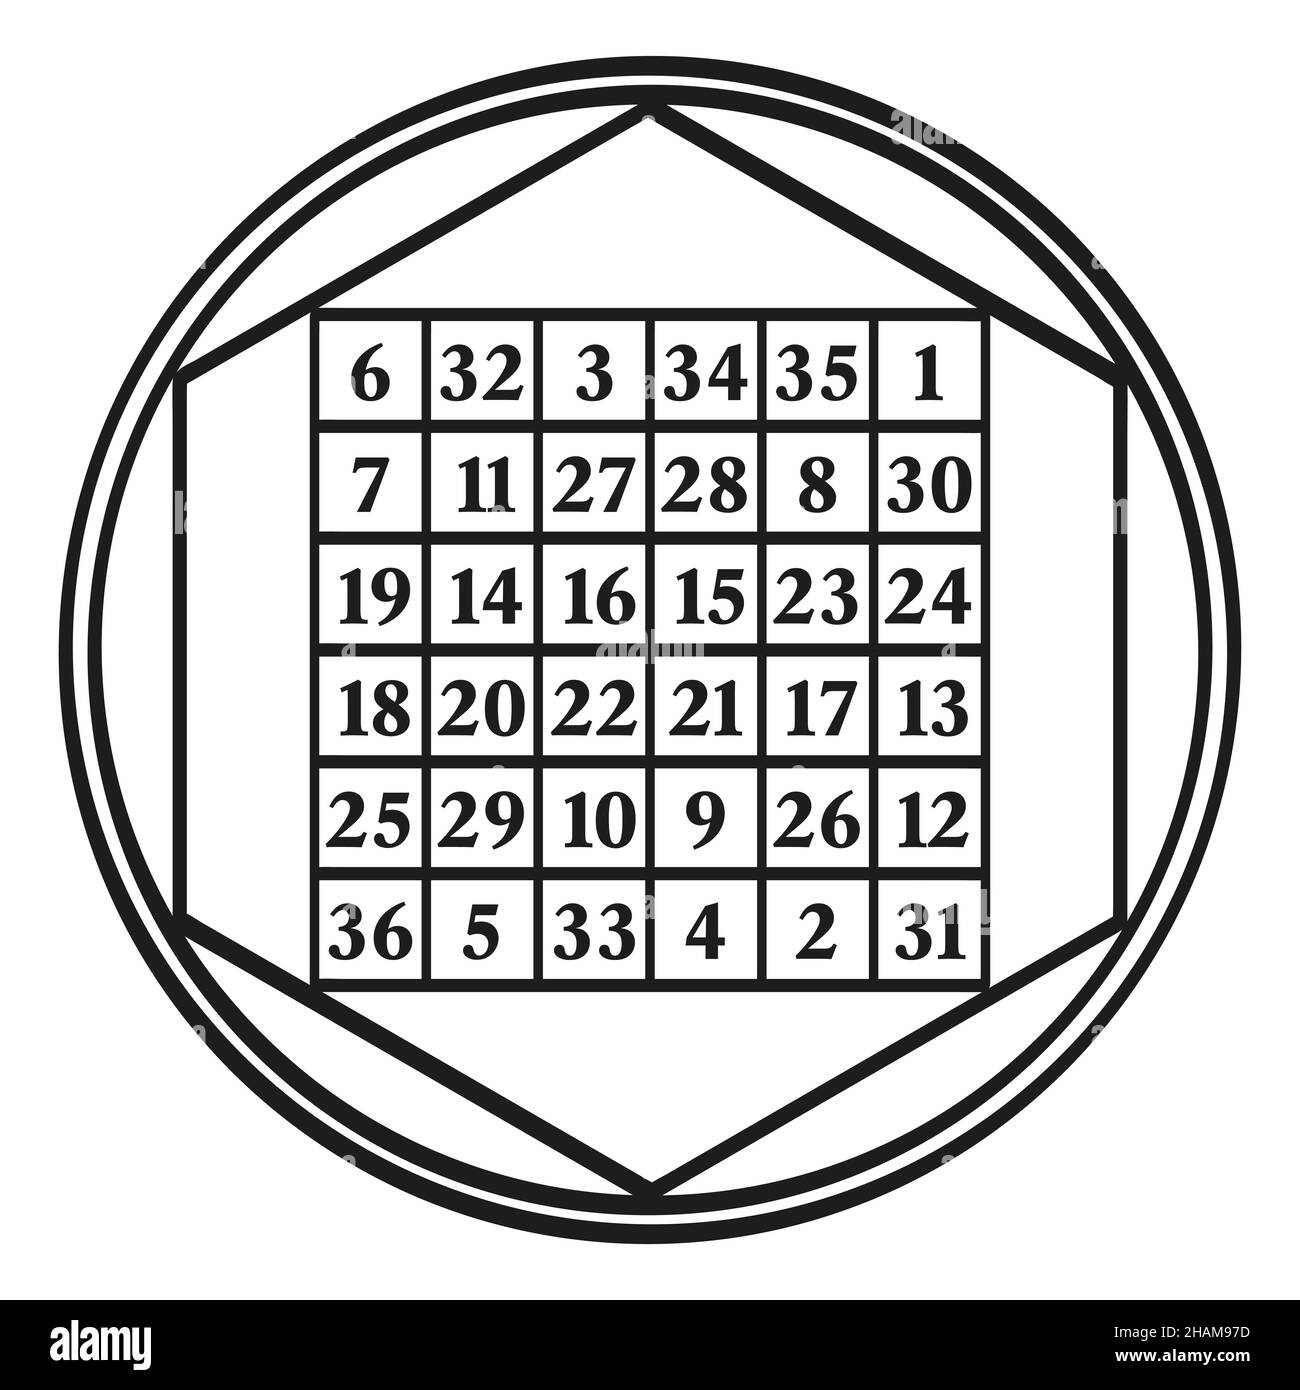 Ordnen Sie sechs magische Quadrat, ein Symbol, zugeordnet zu der astrologischen Sonne, mit der magischen Konstante 111. Ein magisches Quadrat mit den Zahlen 1 bis 36. Stockfoto